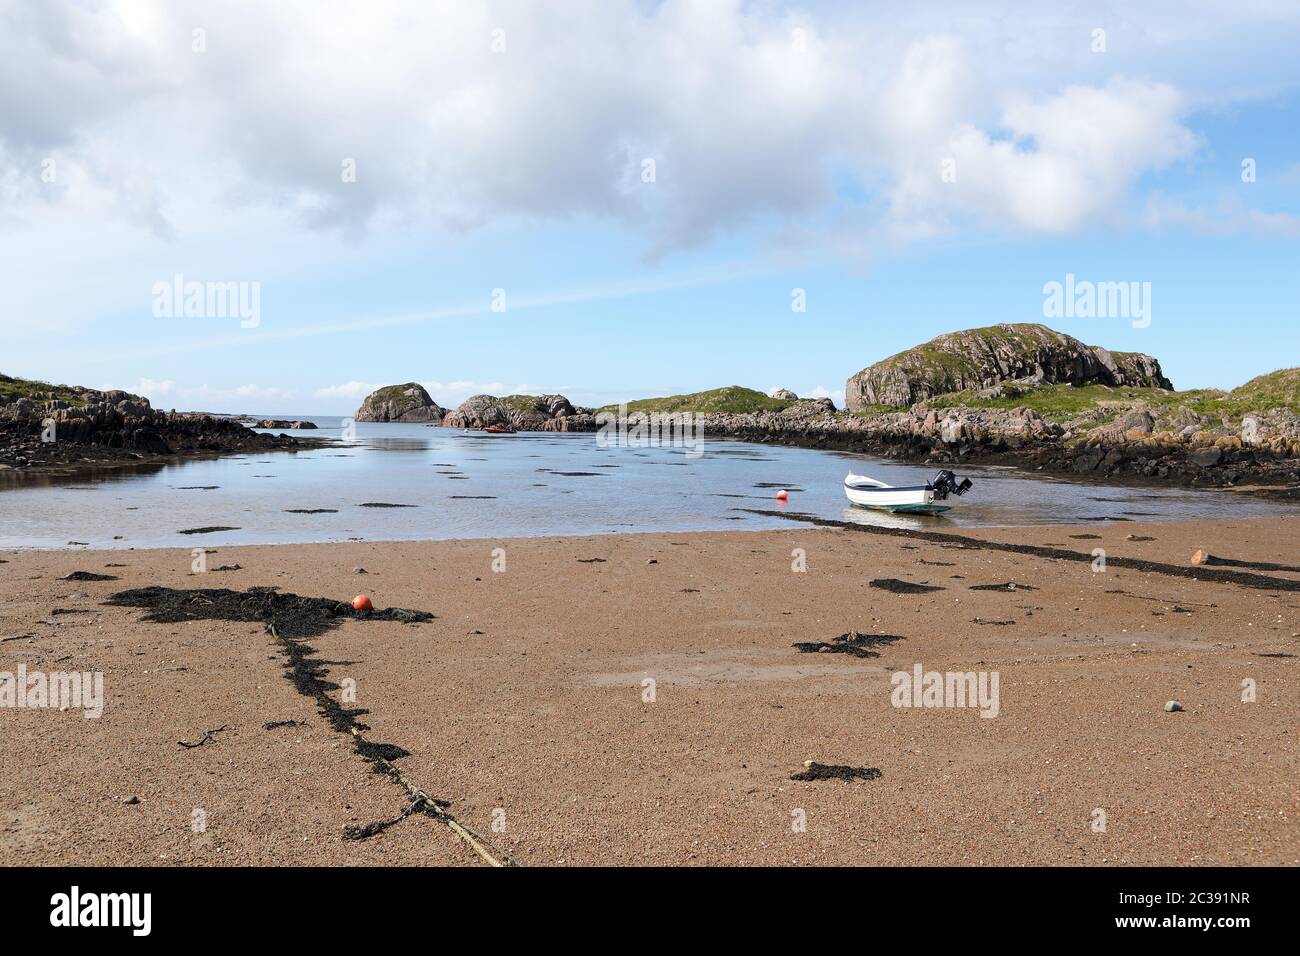 Plage de Kintra, île de Mull, Hébrides intérieures d'Écosse Banque D'Images